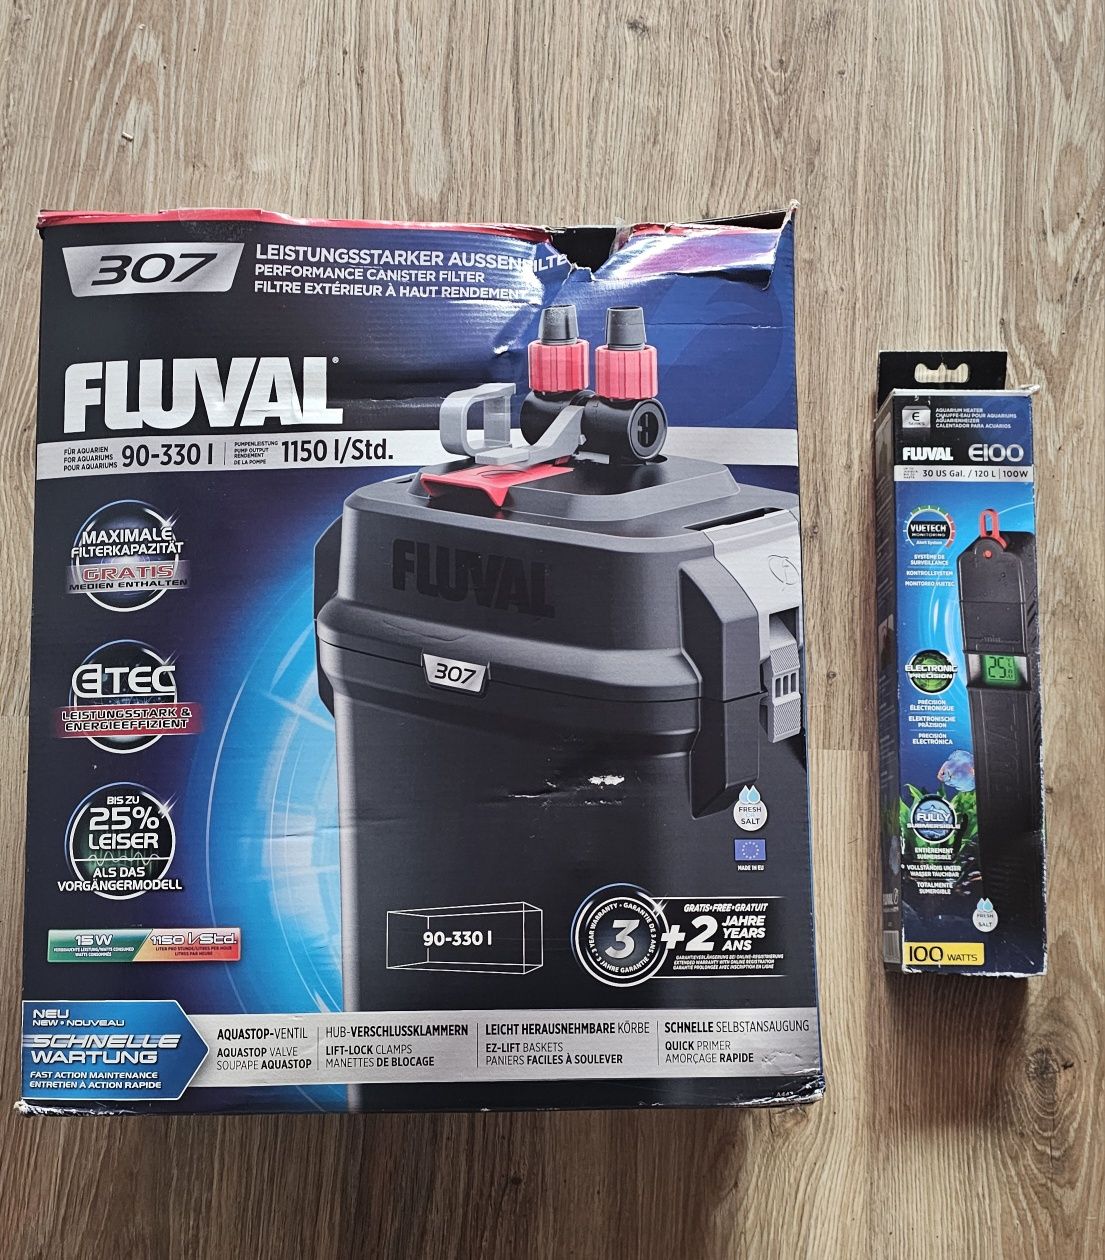 Filtr FLUVAL 307 + grzałka Fluval E100